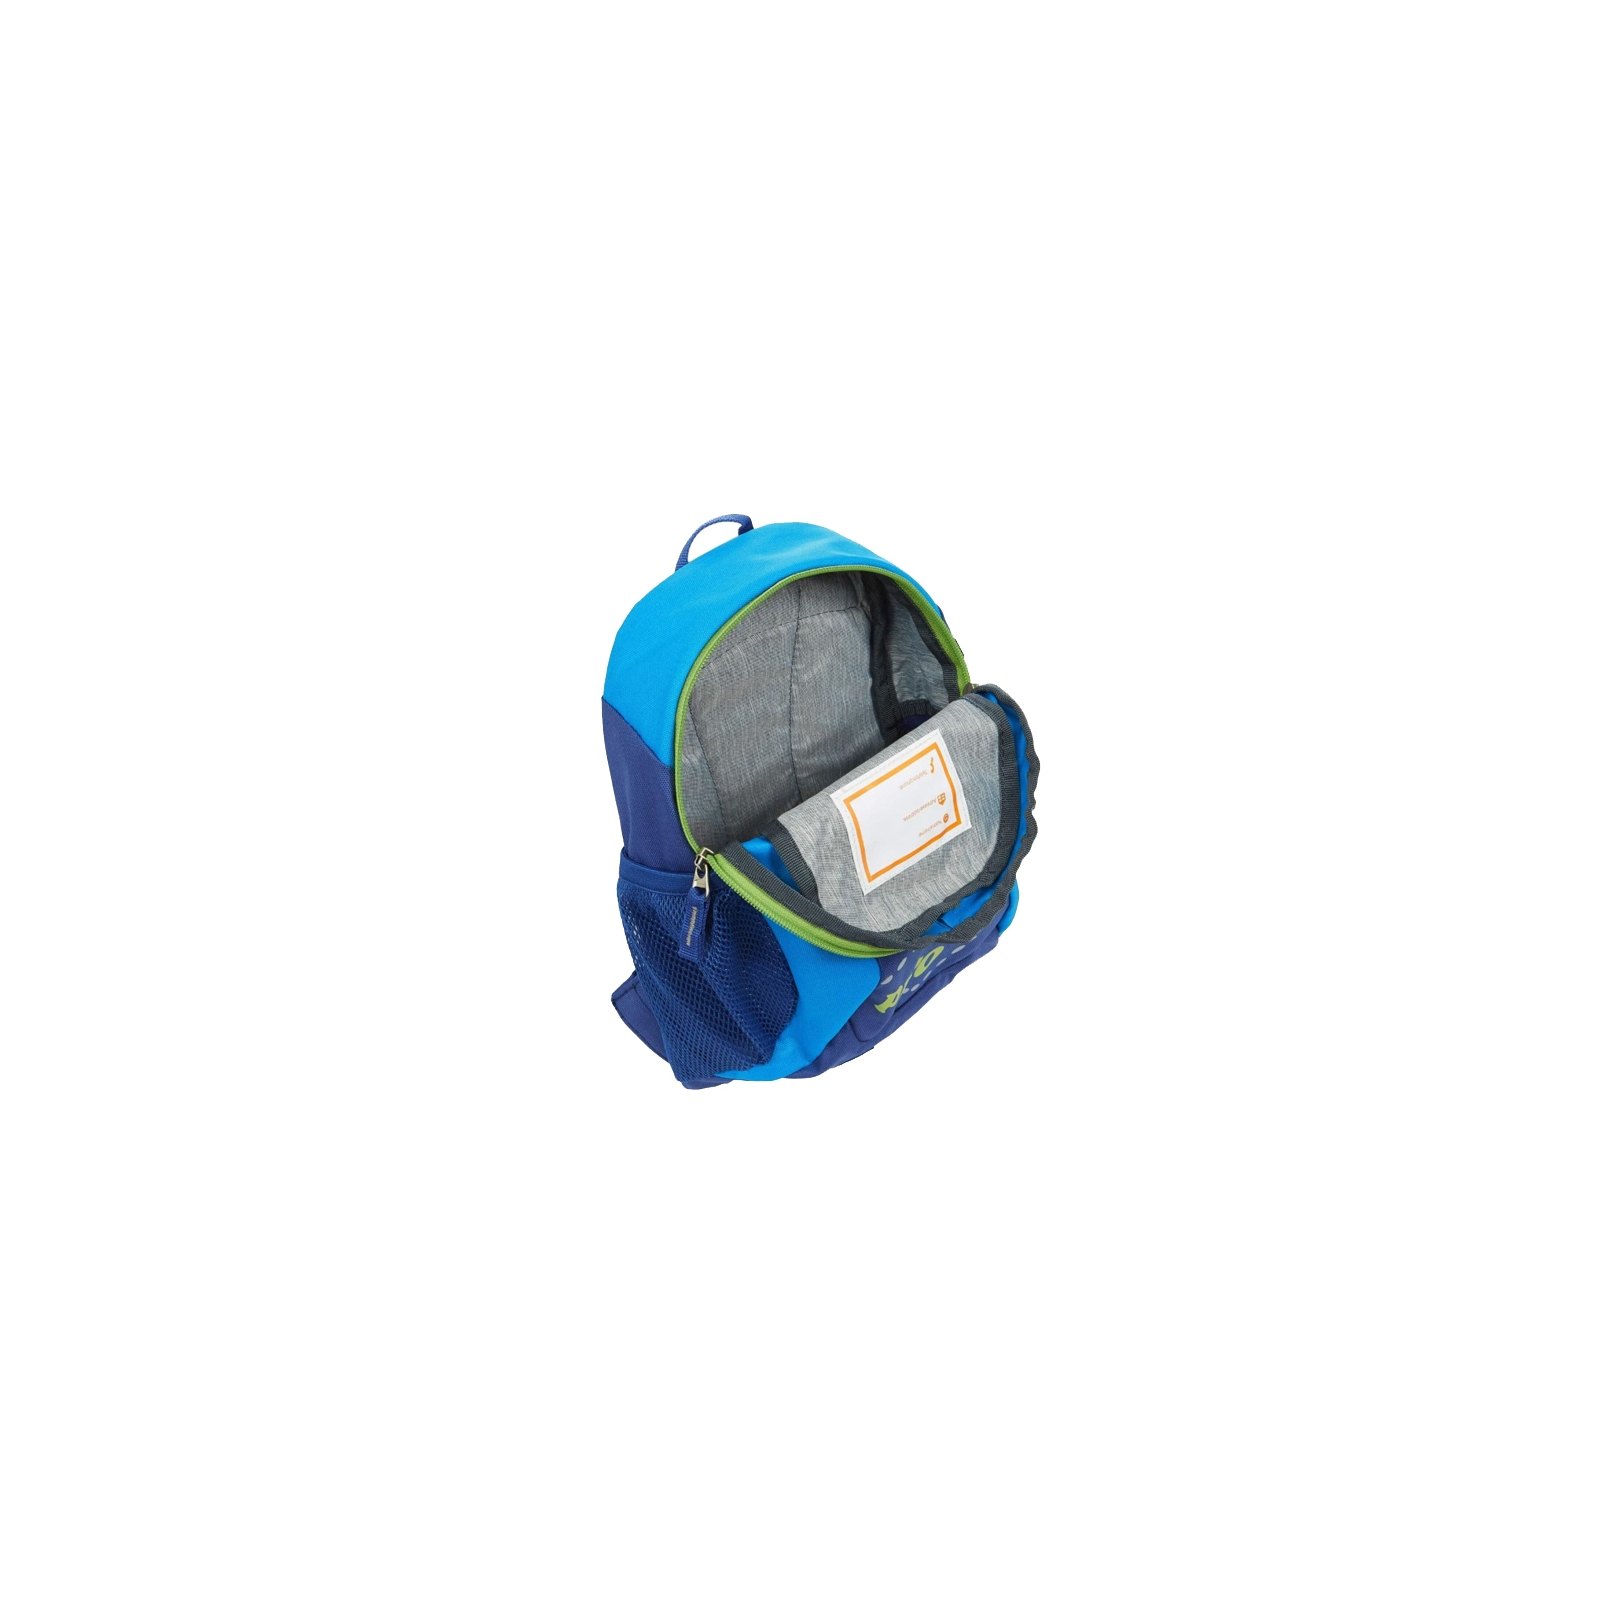 Рюкзак школьный Deuter Pico 3391 indigo-turquoise (36043 3391) изображение 7